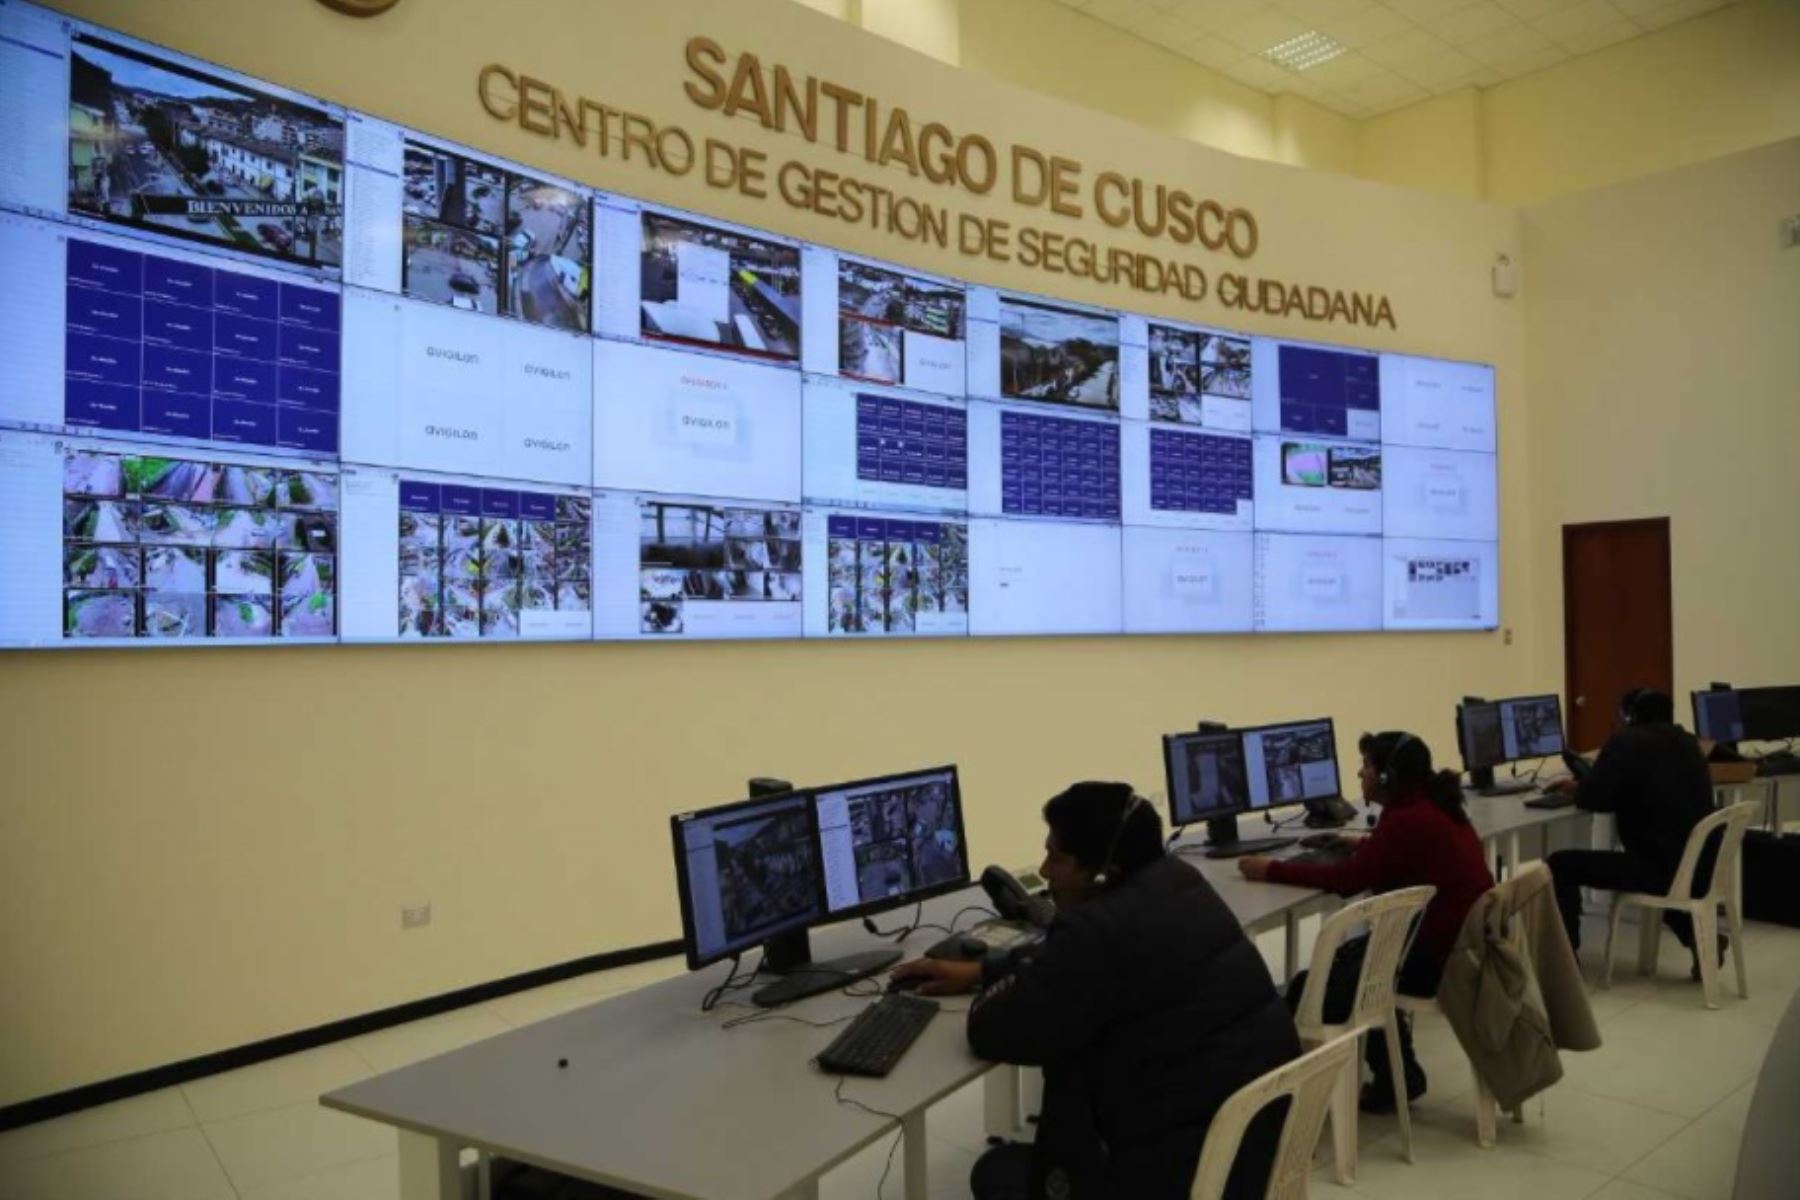 Más de 120,000 pobladores del distrito de Santiago, en la región Cusco, cuentan con un Centro de Gestión de Seguridad Ciudadana, cuyo objetivo es brindar prevención, atención inmediata, protección y seguridad, el cual fue construido mediante la modalidad de inversión de obras por impuestos.